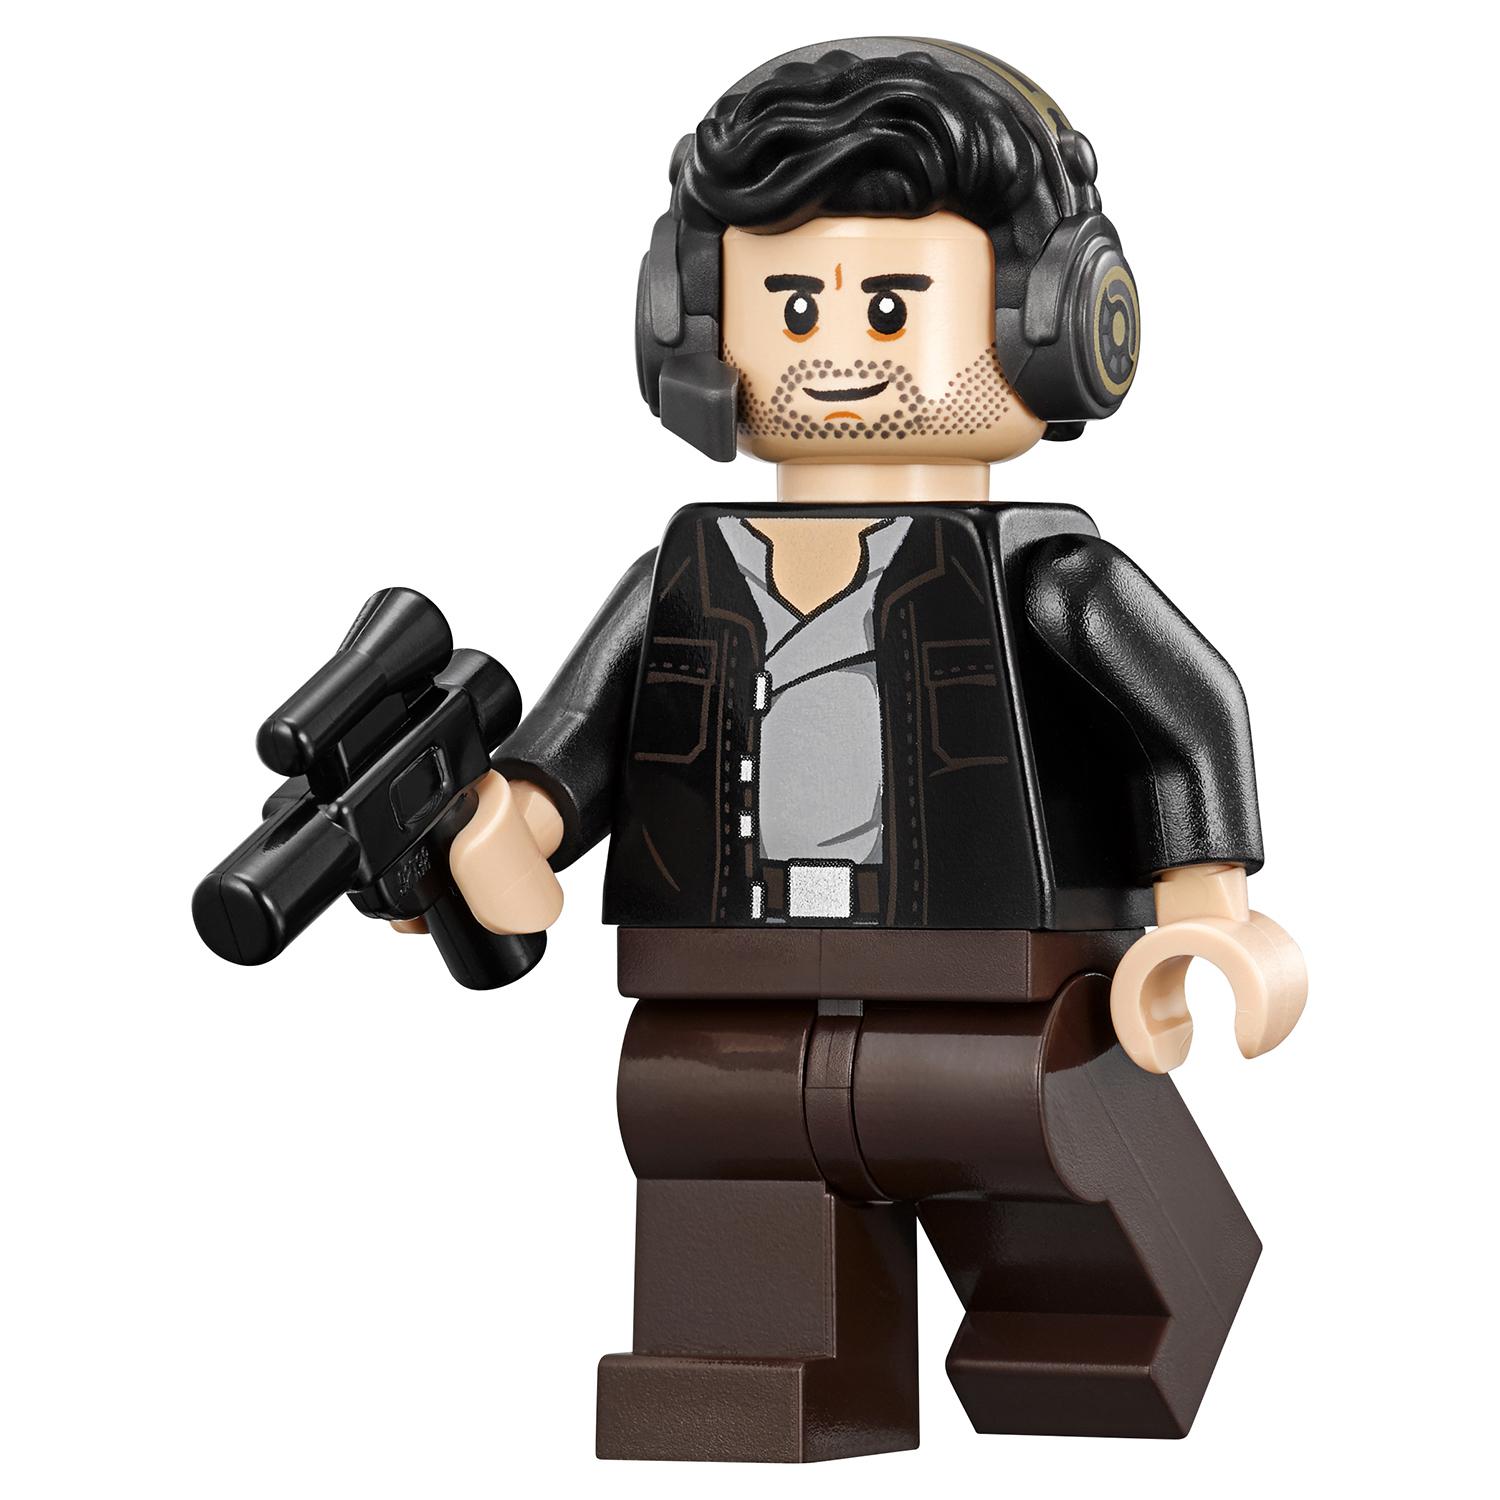 Lego Star Wars 75202 Защита Крайта